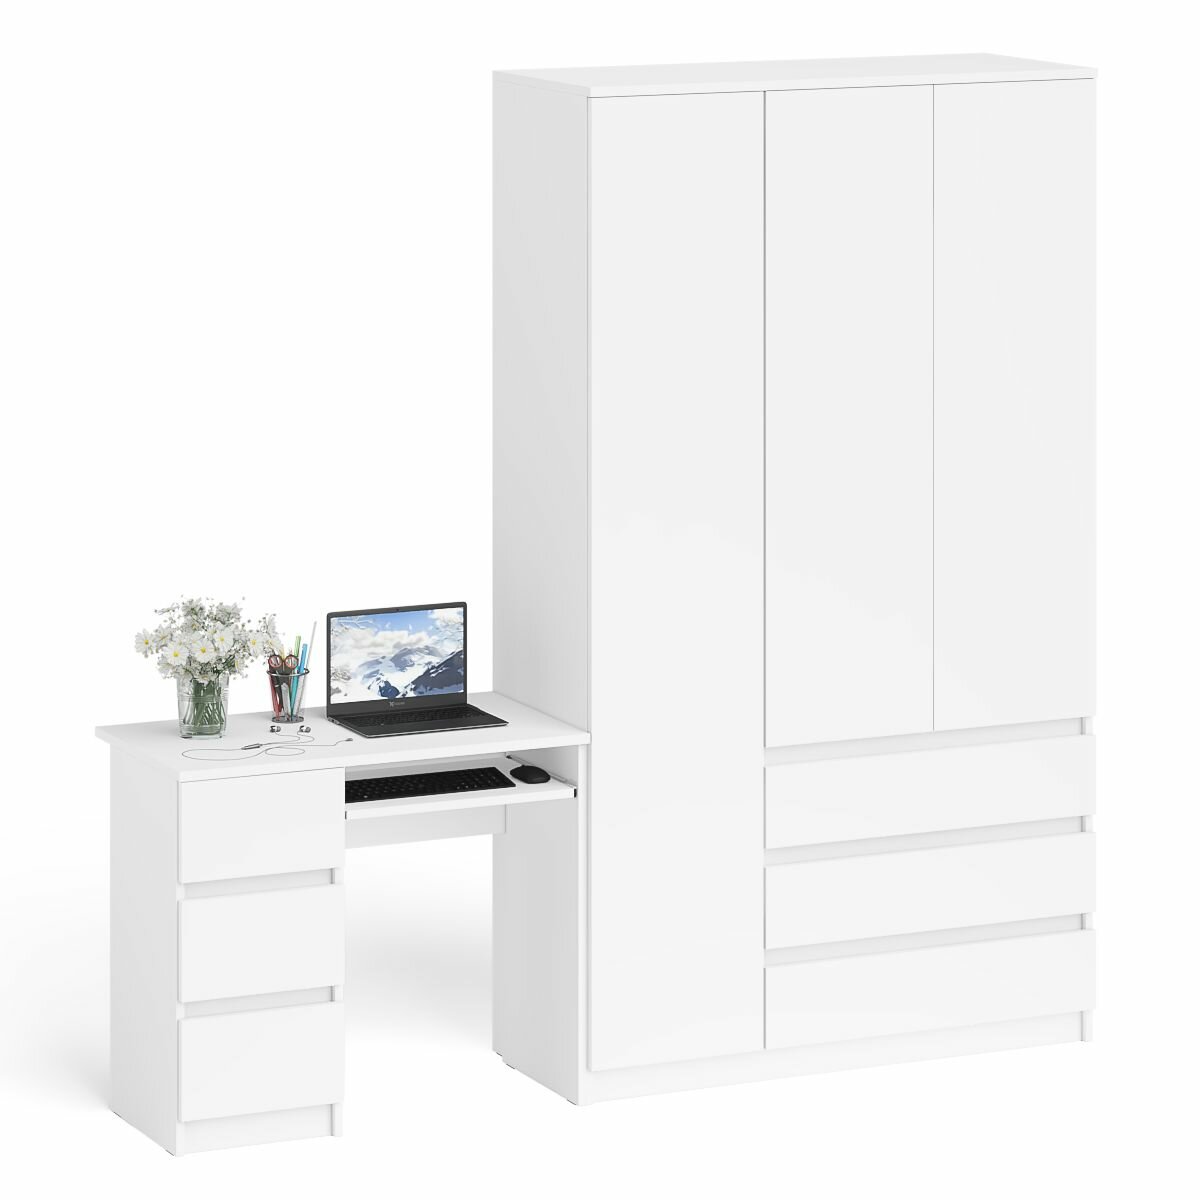 Компьютерный стол СВК Мори МС-6 левый и шкаф-комод с дверкой и тремя ящиками цвет белый, 210,4х50,4х209,6 см.